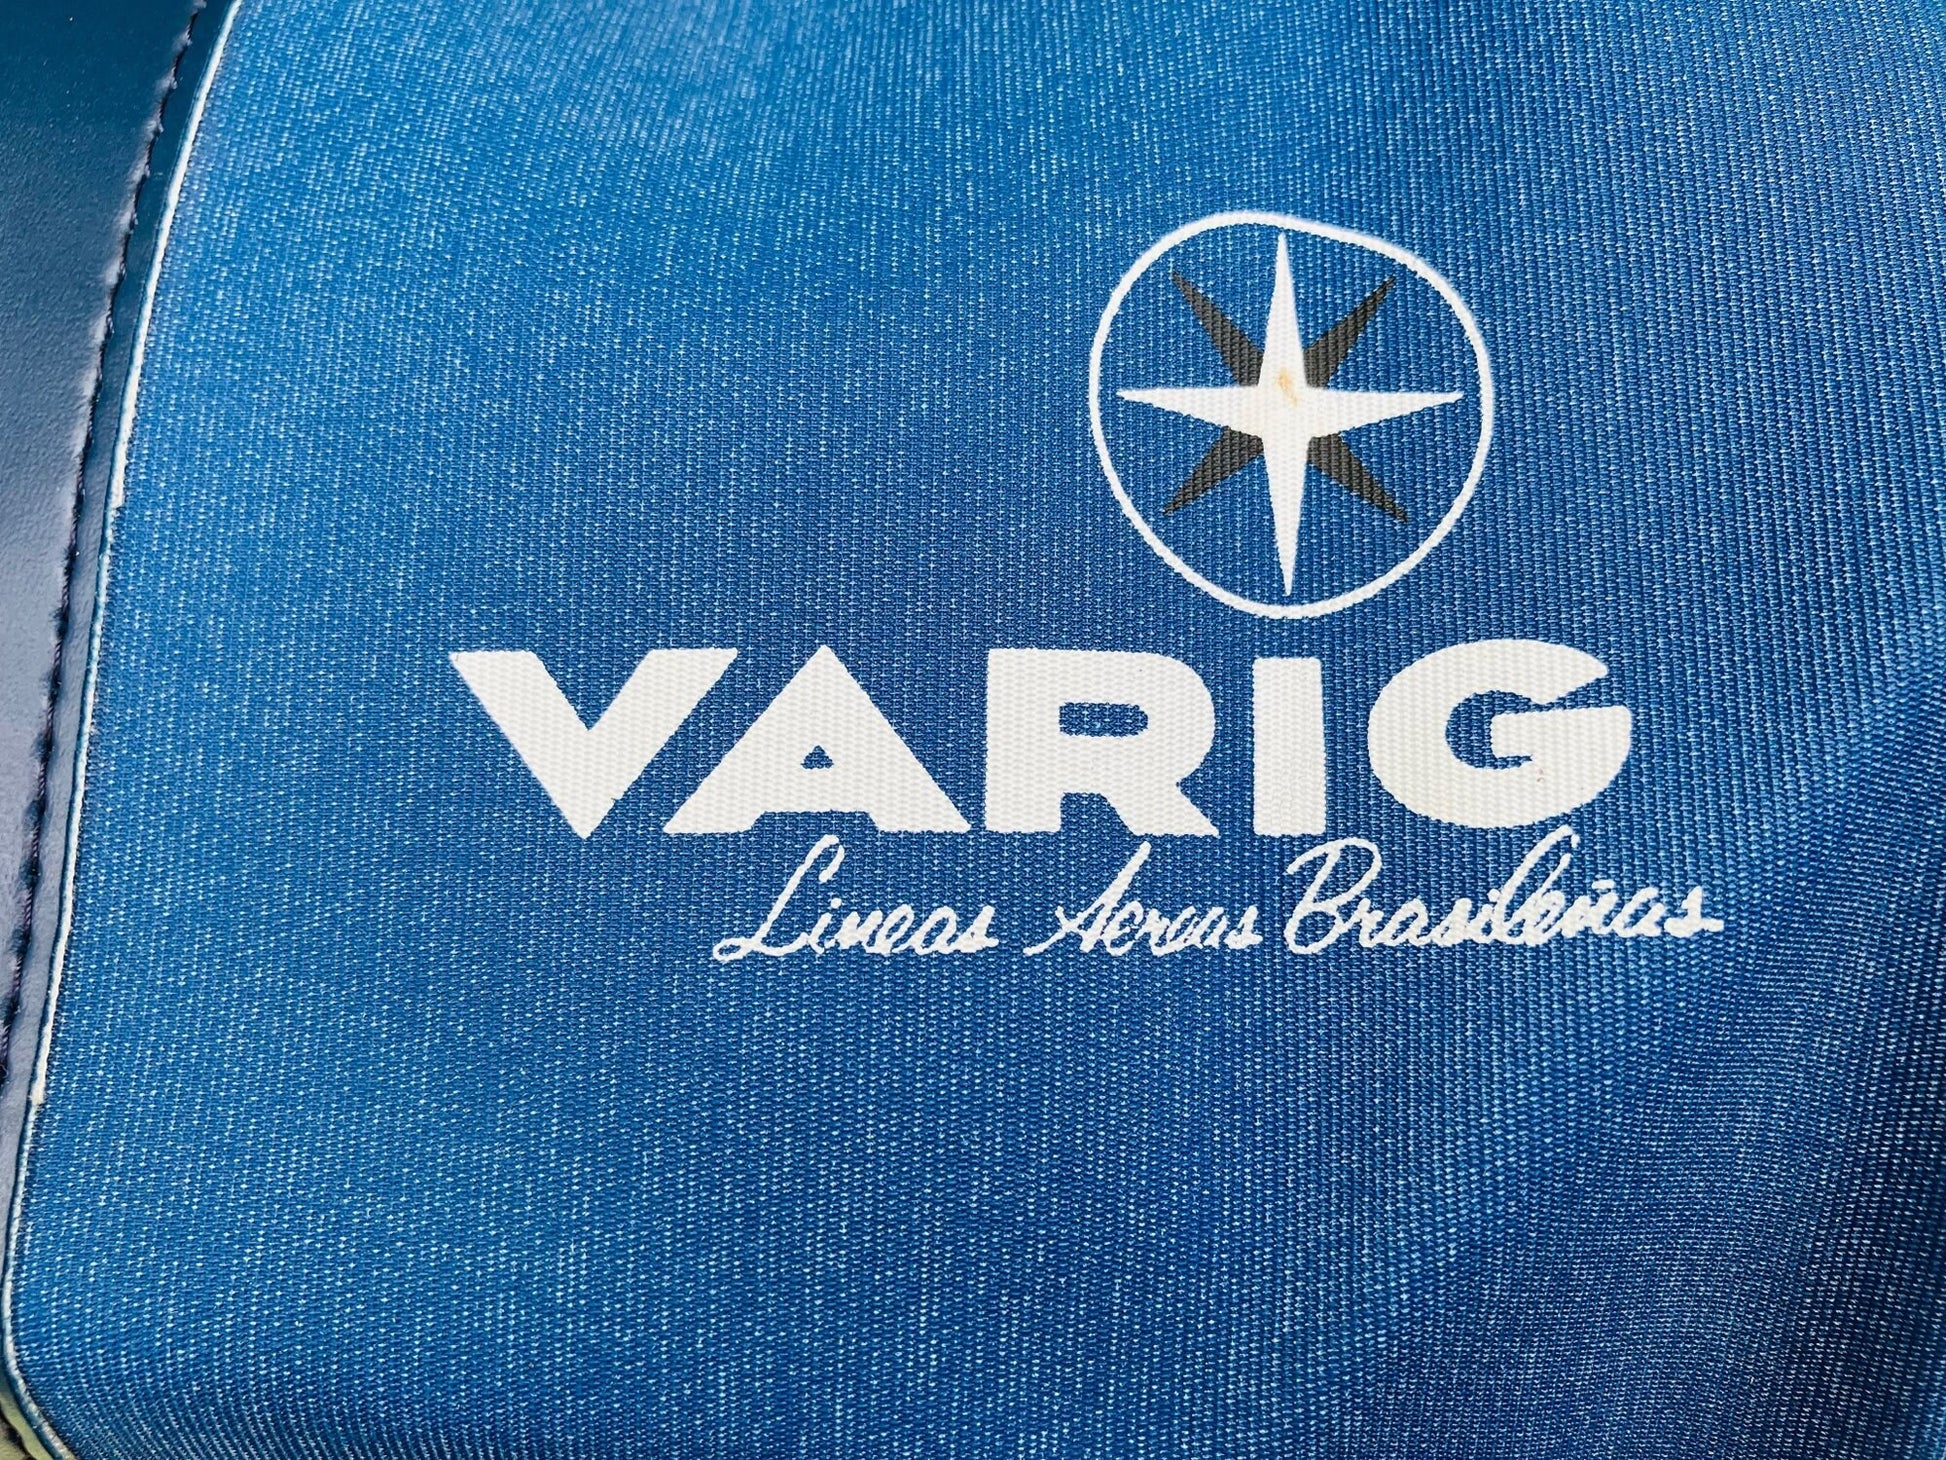 Varig Airlines Original Vintage Flight Attendants Travel Bag